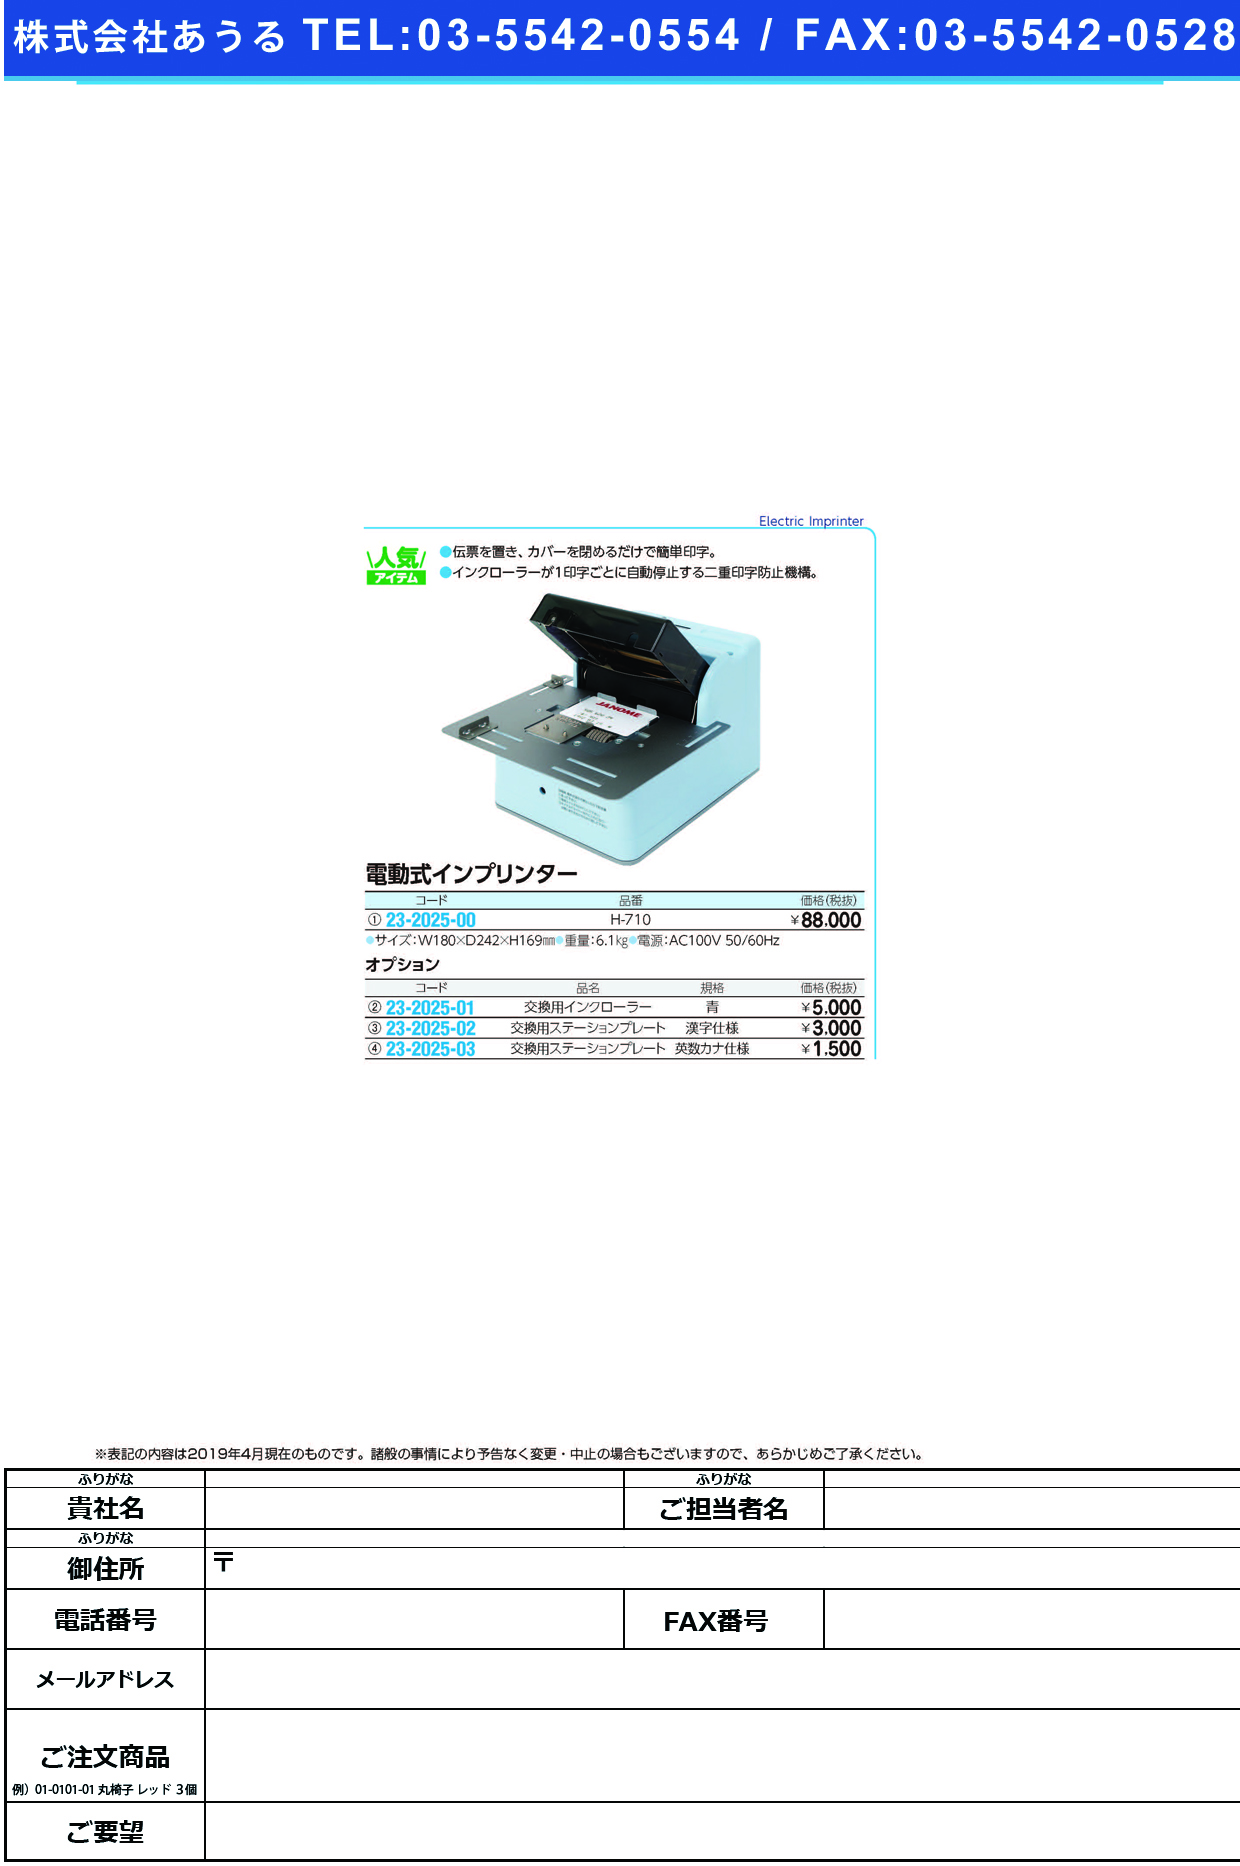 (23-2025-00)電動式インプリンター H-710 ﾃﾞﾝﾄﾞｳｼｷｲﾝﾌﾟﾘﾝﾀｰ【1台単位】【2019年カタログ商品】